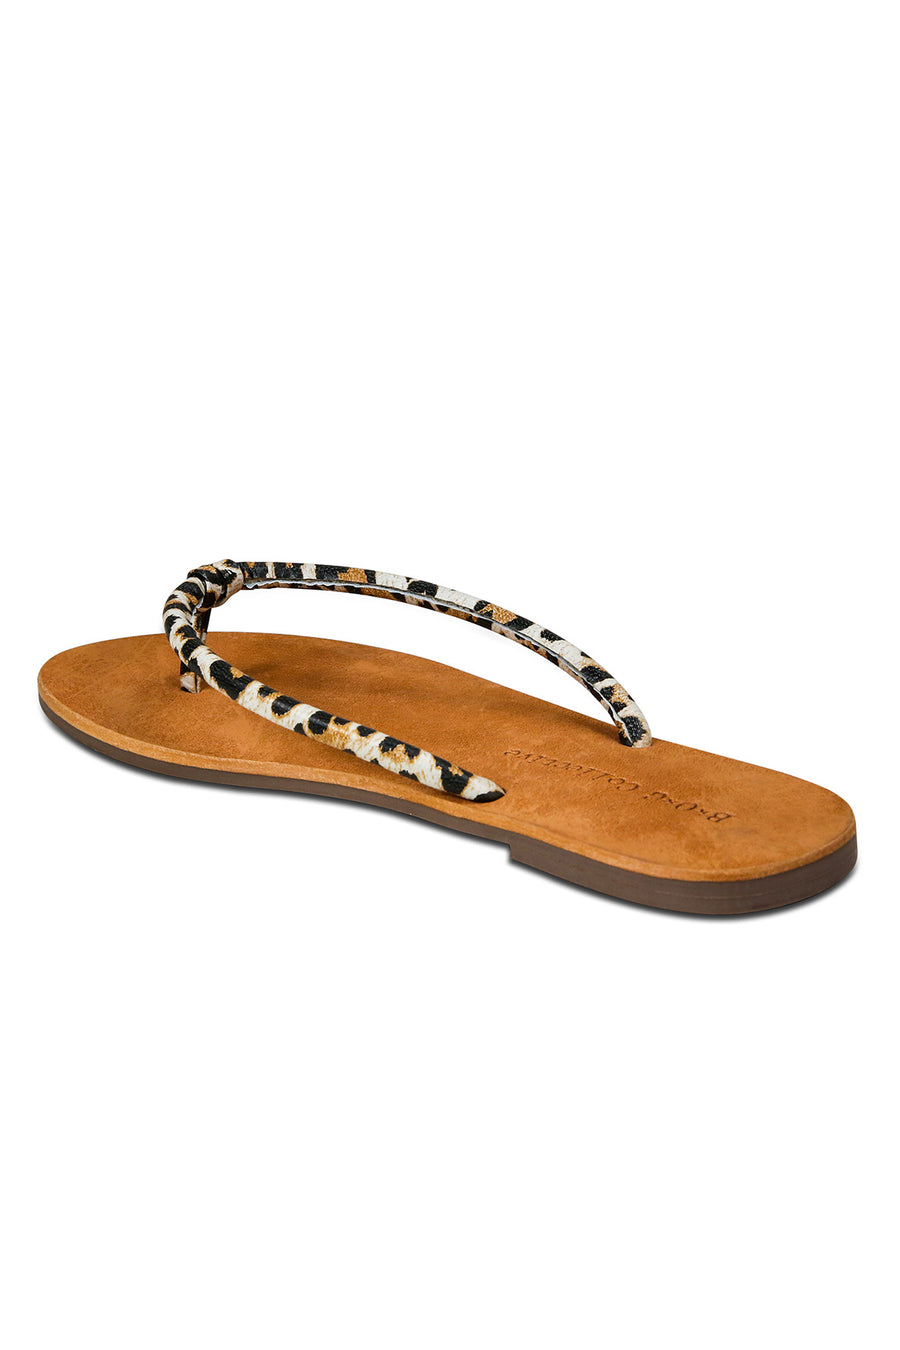  Pipa Leopard Leather Flip Flop Sandal Master